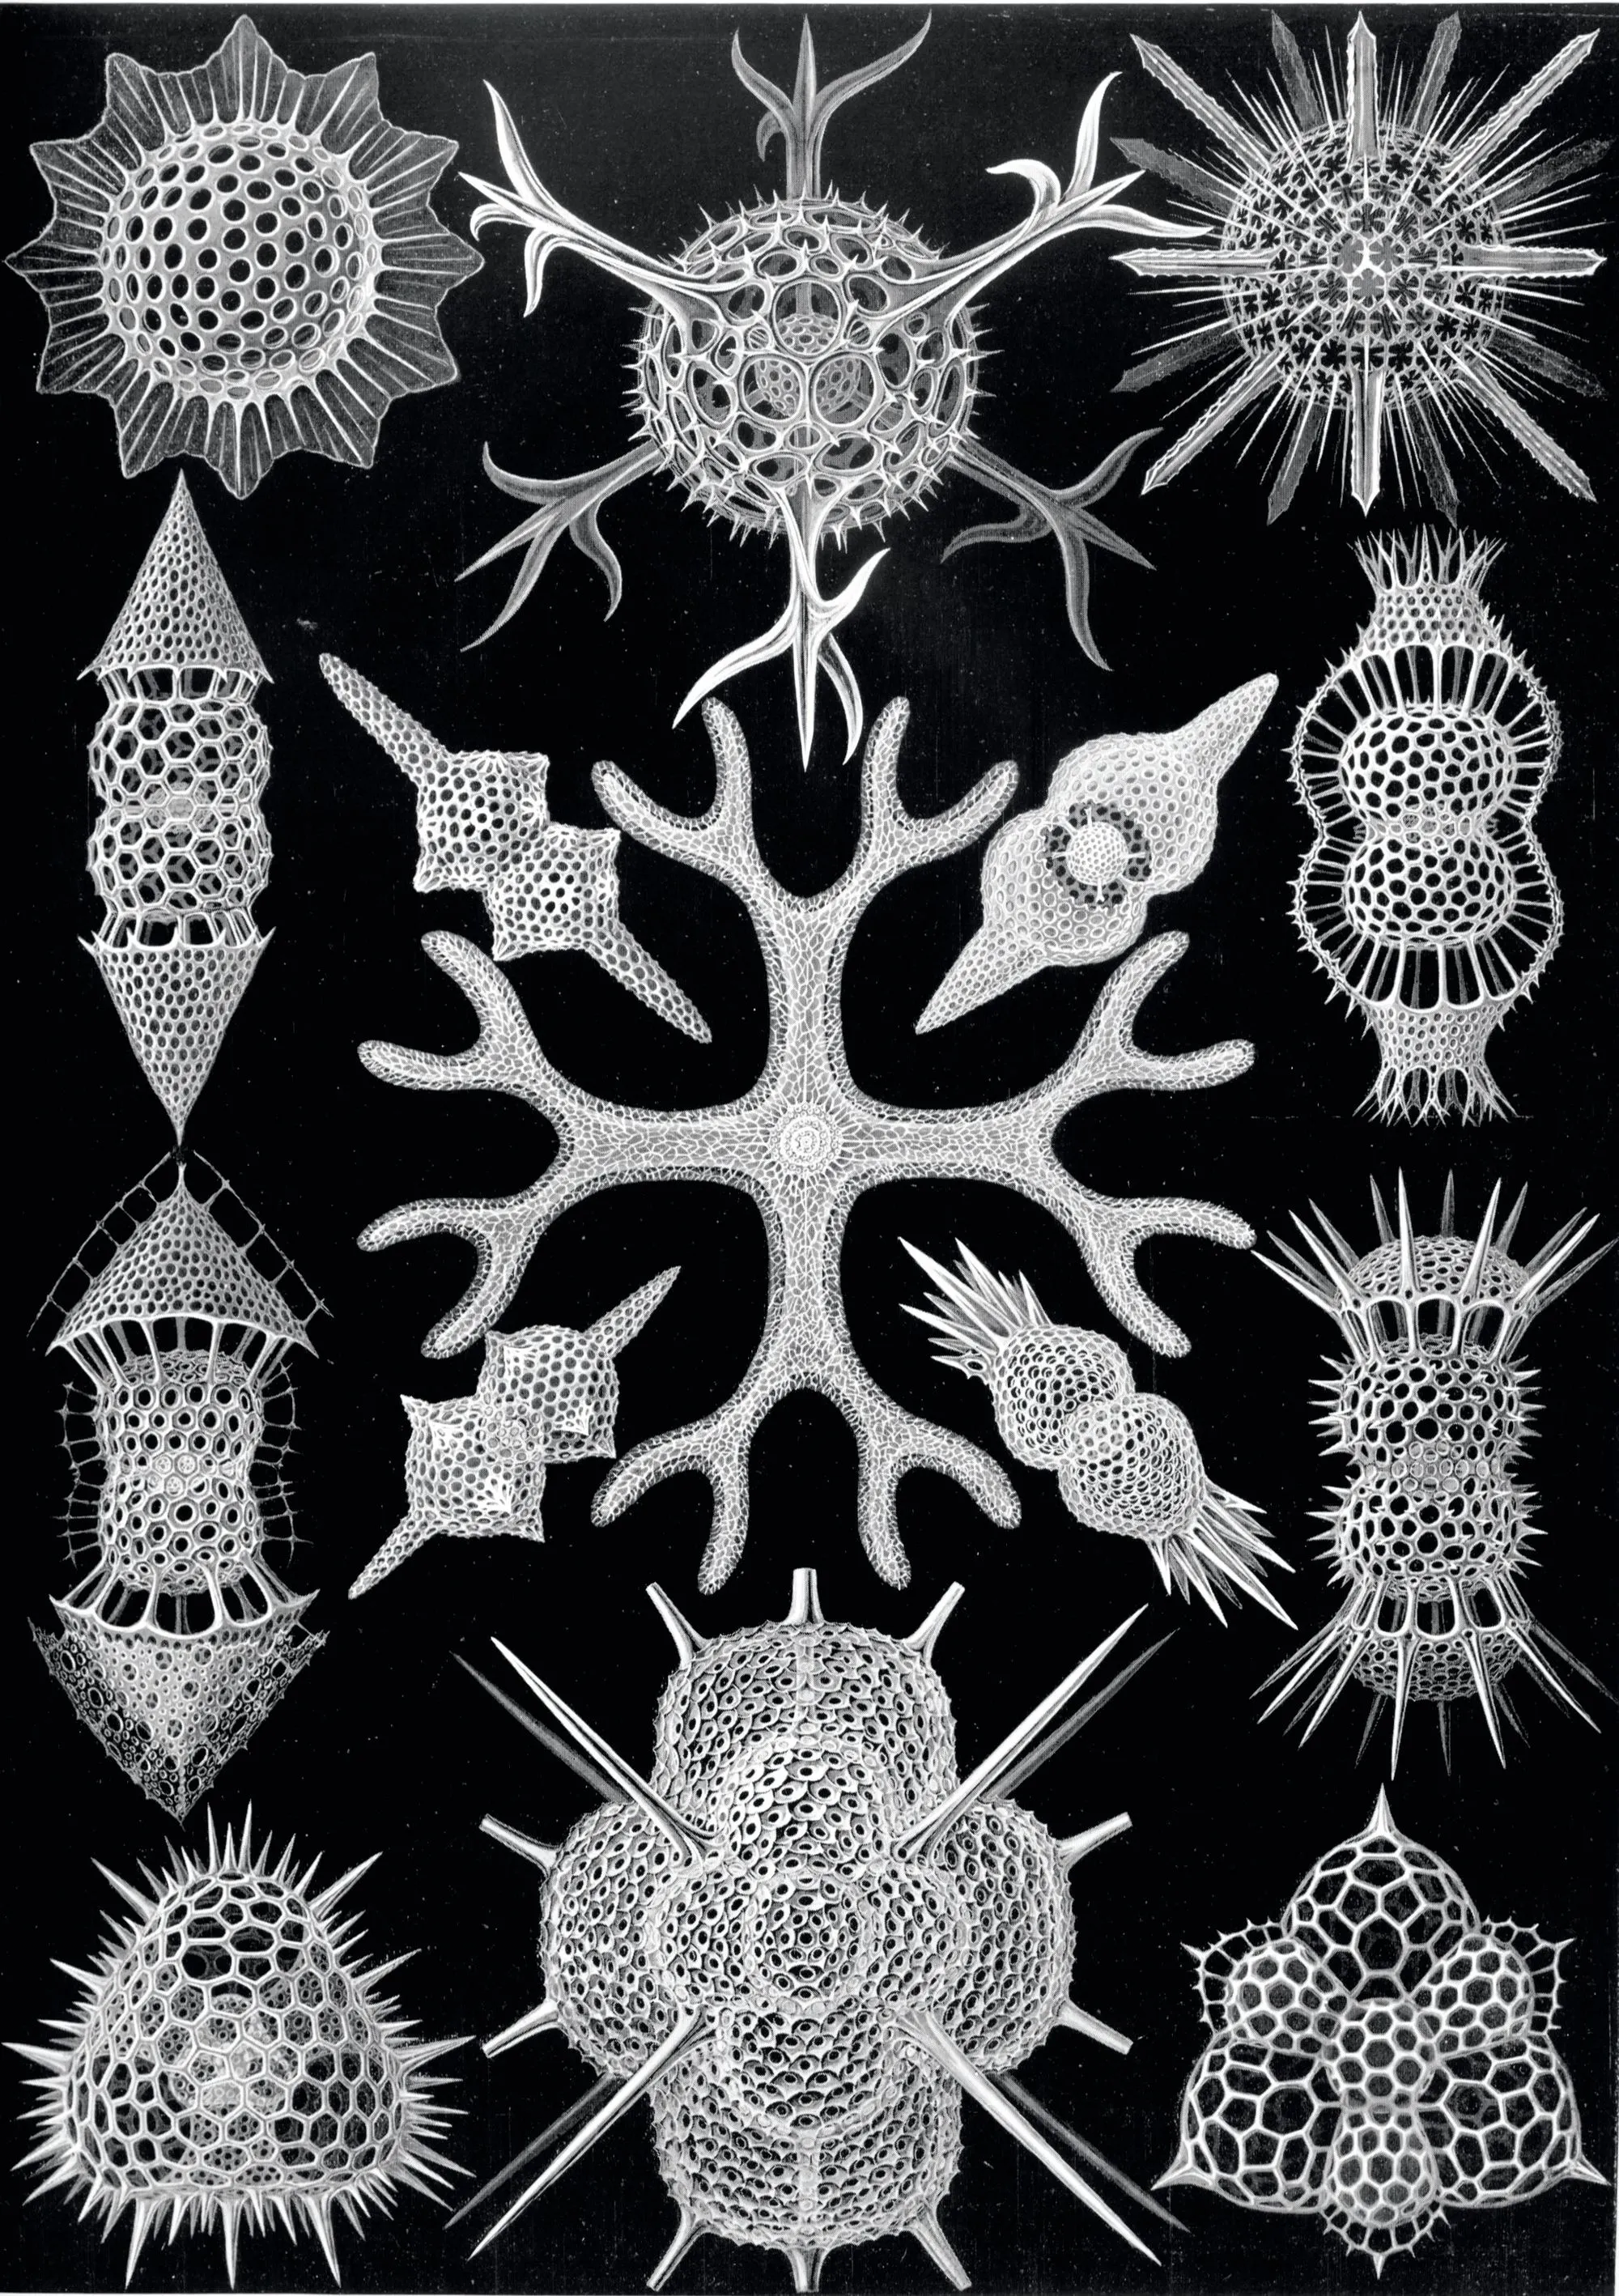 Dessins de squelettes de radiolaires d'Ernst Haeckel